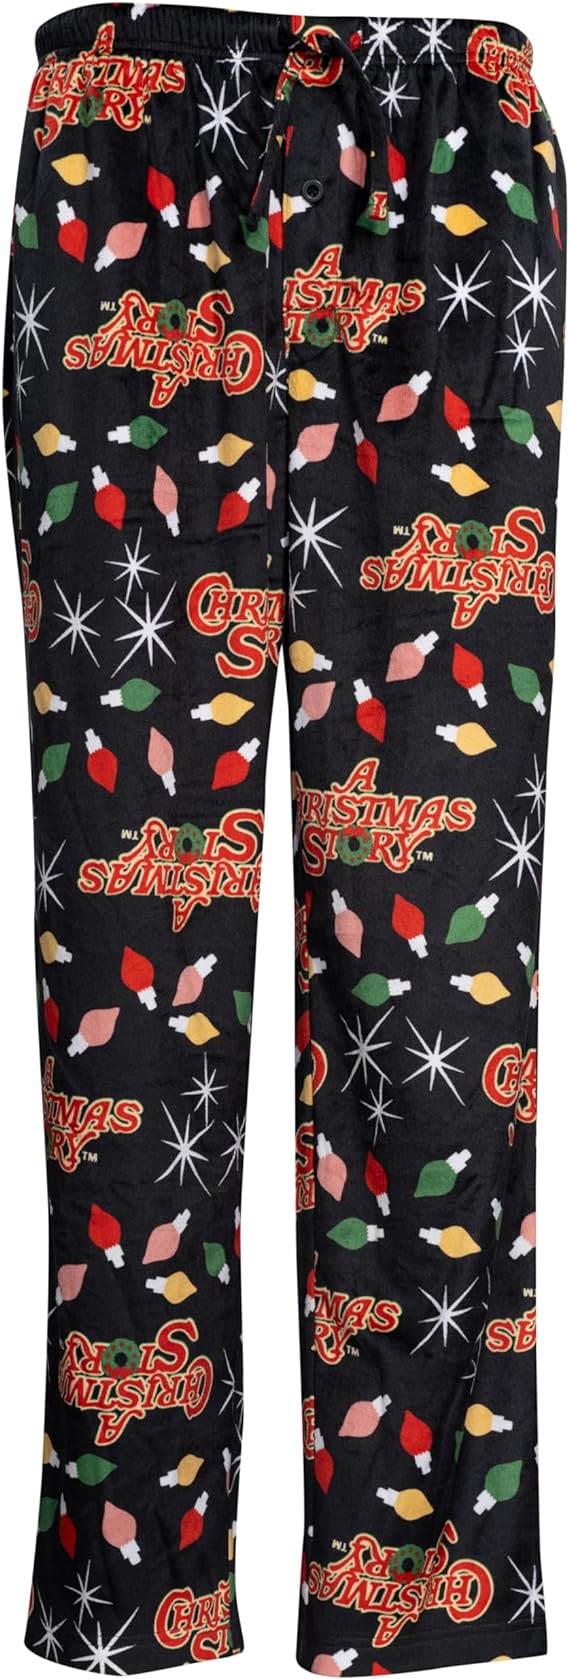 A CHRISTMAS STORY Brushed Fleece Holiday Lights Pj Lounge Pants Pajama